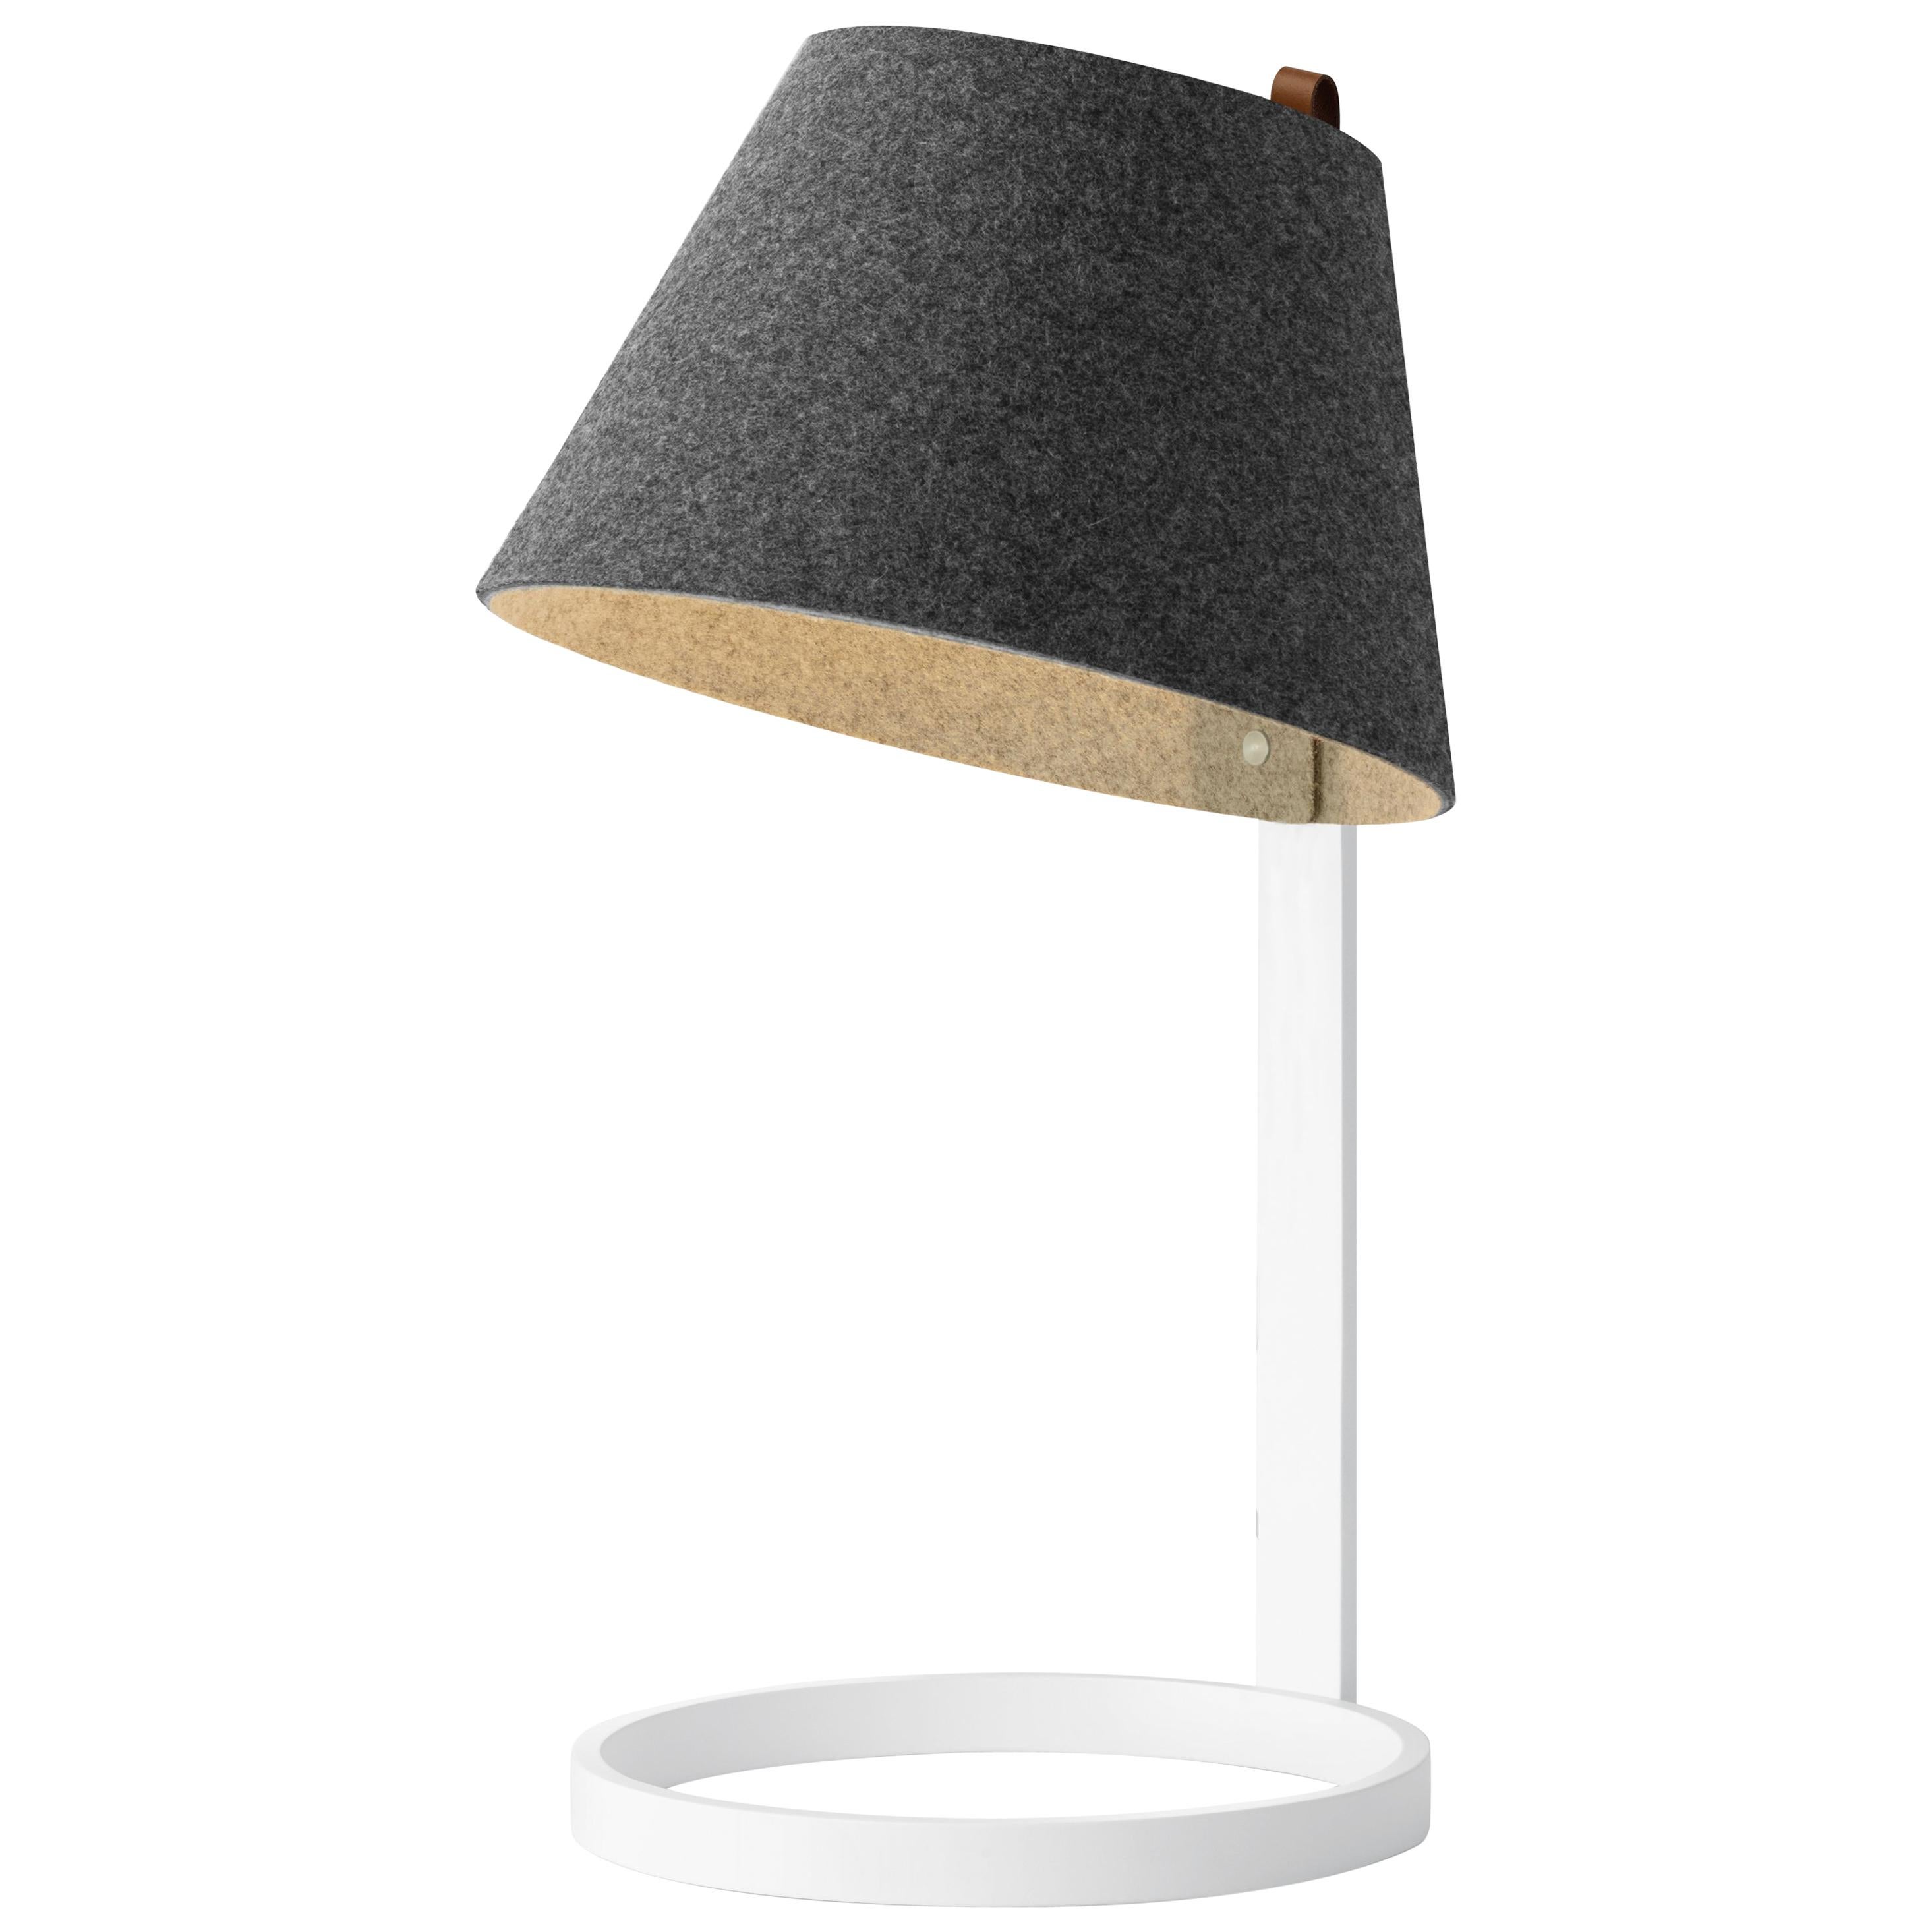 Petite lampe de bureau Lana gris anthracite et gris avec base blanche par Pablo Designs